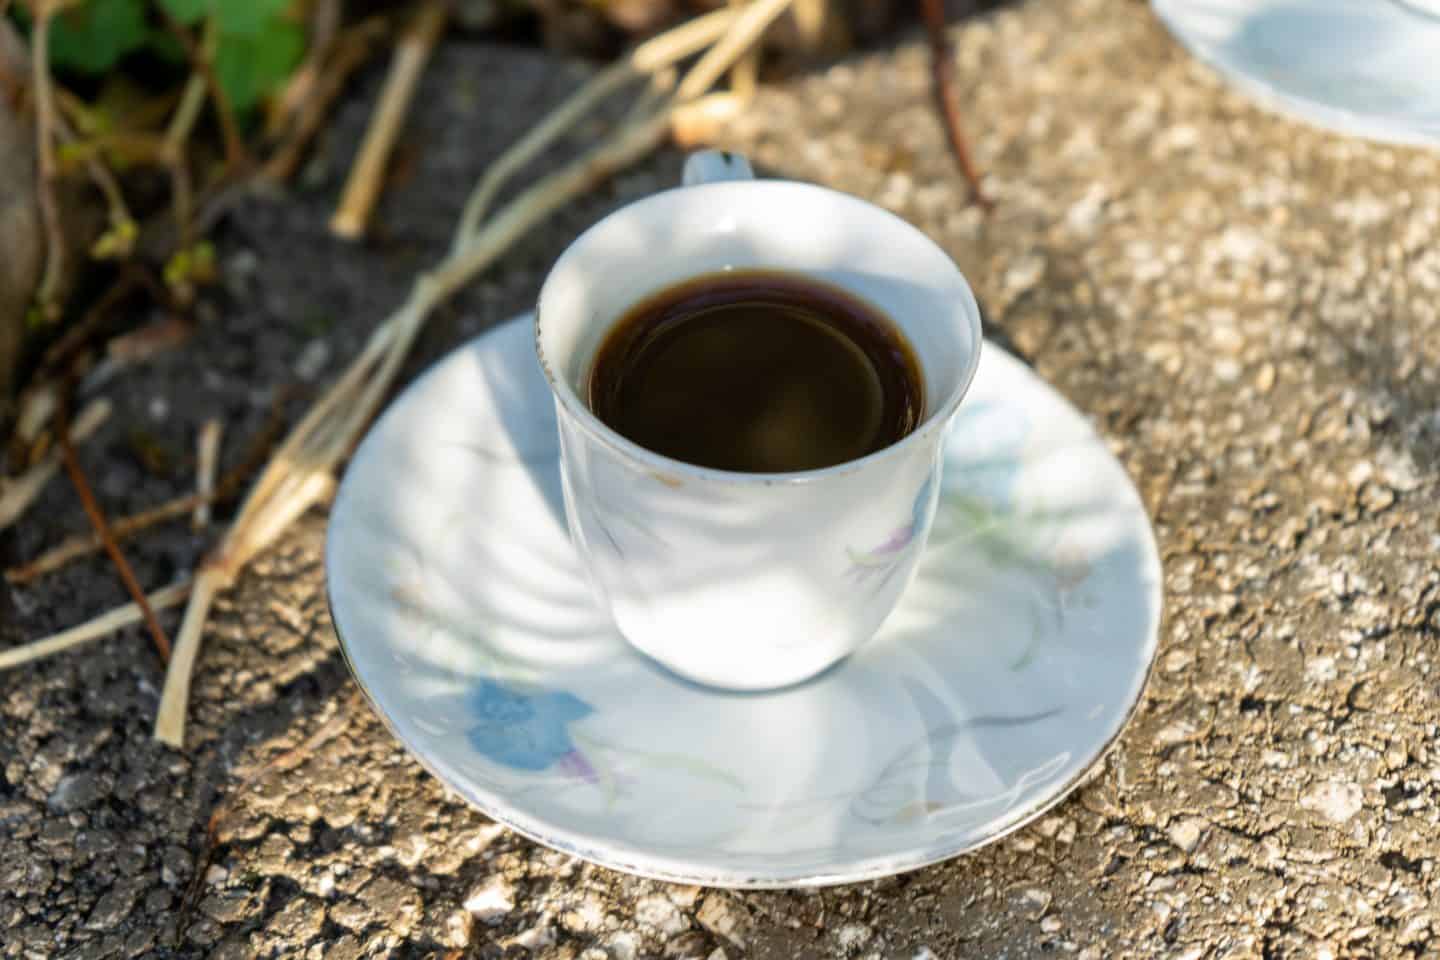 Increíbles recuerdos albaneses, una taza de café albanés en un platillo